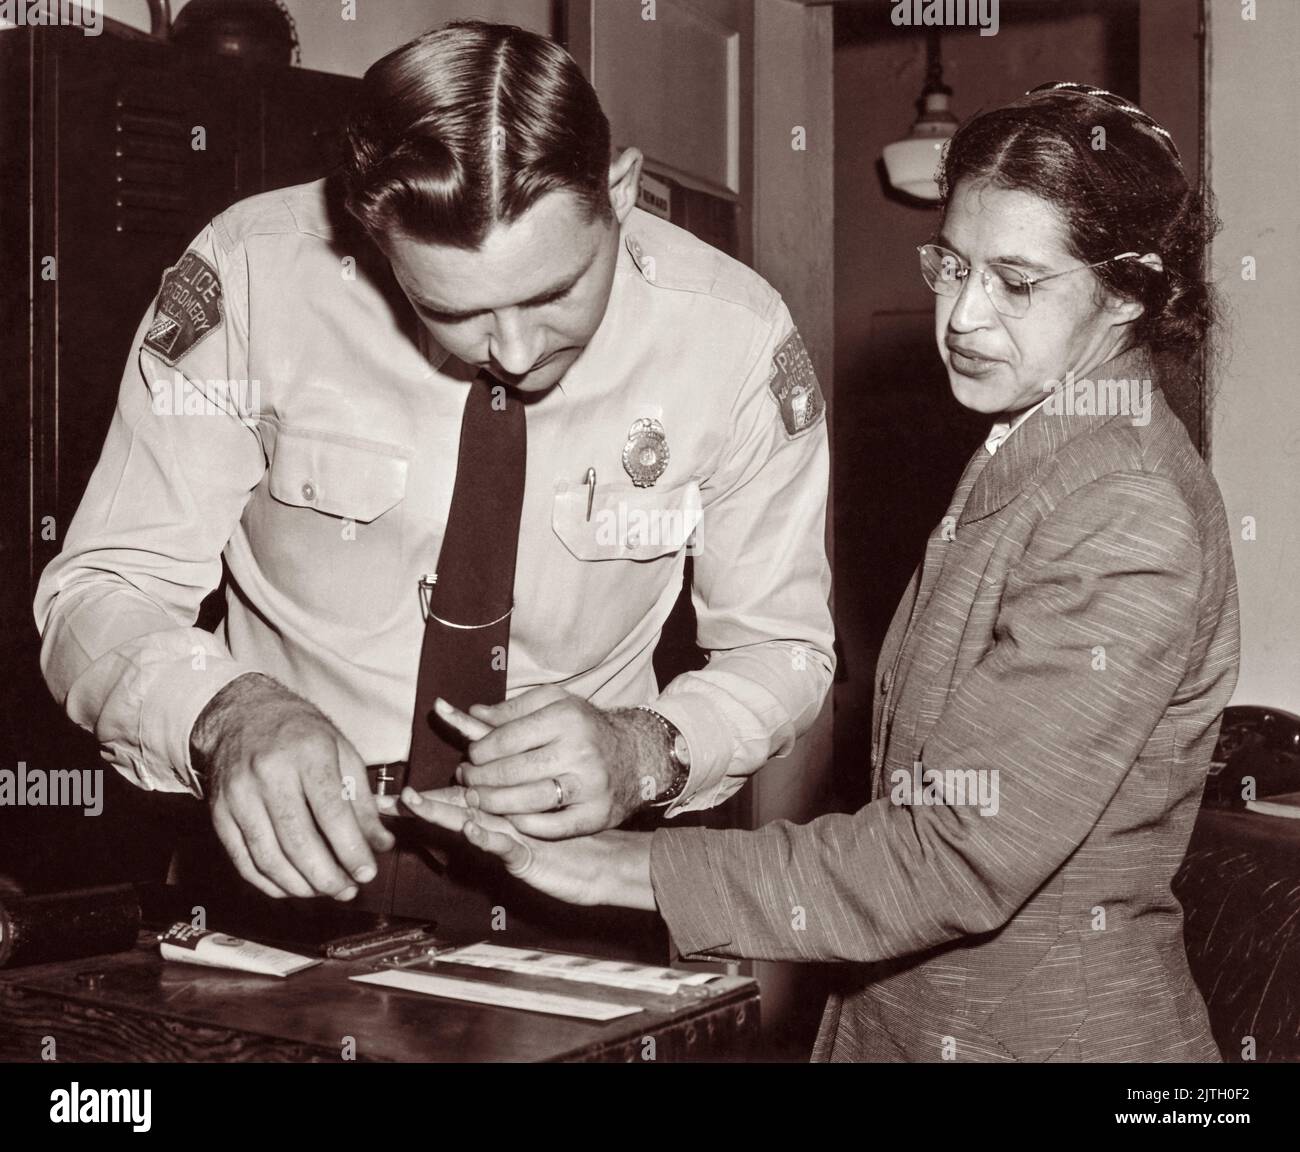 Rosa Parks è stato impronte il 22 febbraio 1956, dal tenente D.H. Lackey come una delle persone accusate come leader del boicottaggio Montgomery bus. Era una delle 73 persone arrotondate dai deputati quel giorno dopo che una grande giuria ha incaricato 113 afroamericani per l'organizzazione del boicottaggio. Questo è stato pochi mesi dopo il suo arresto il 1 dicembre 1955, per il rifiuto di rinunciare al suo posto a un passeggero bianco su un autobus municipale segregato a Montgomery, Alabama. Foto Stock